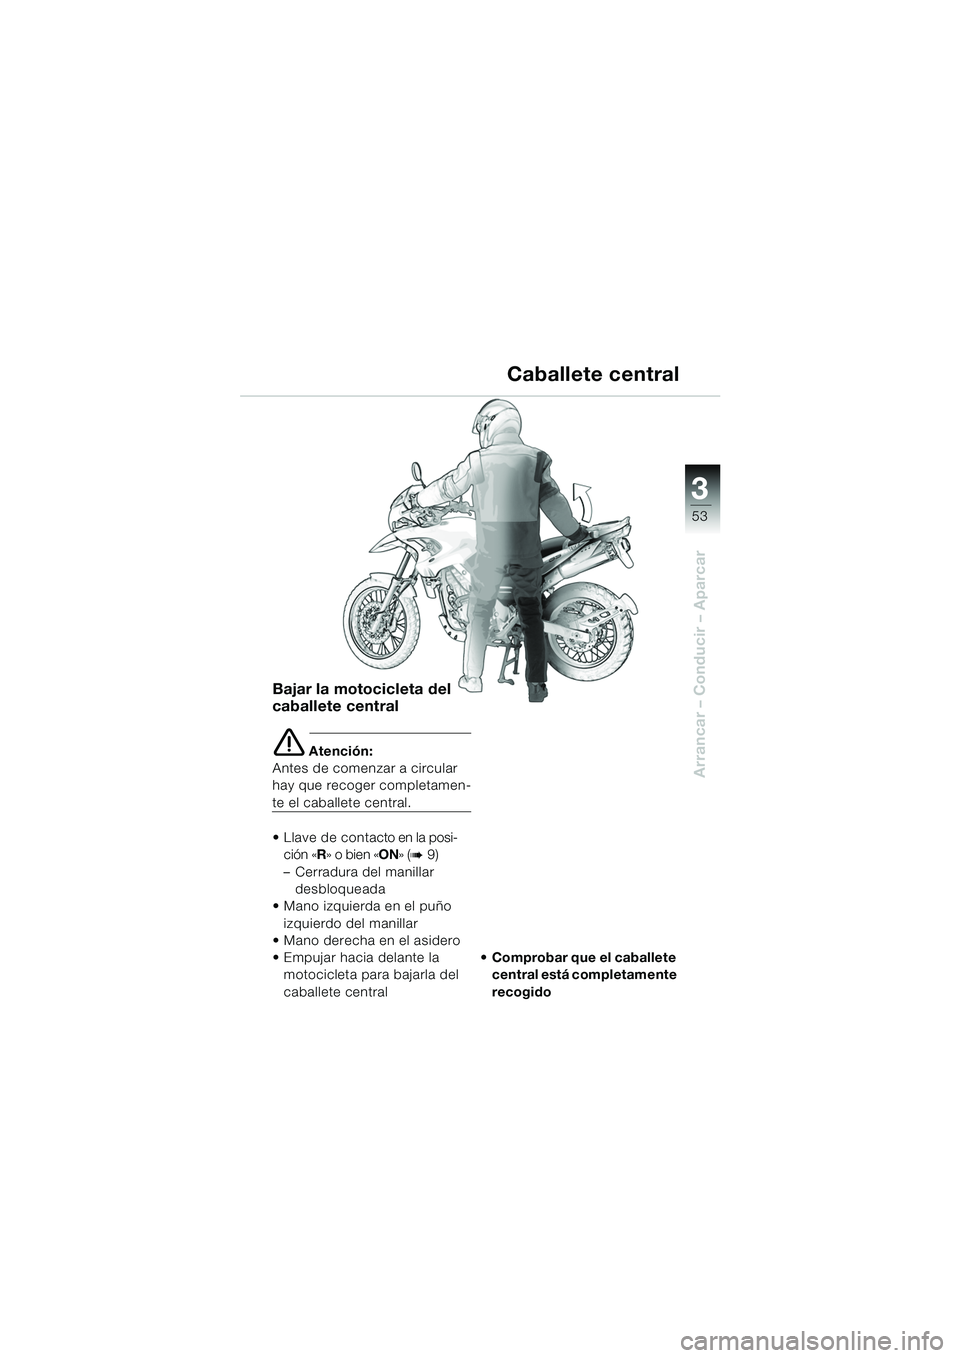 BMW MOTORRAD F 650 GS DAKAR 2003  Manual de instrucciones (in Spanish) 3
53
Arrancar – Conducir – Aparcar
Bajar la motocicleta del 
caballete central
e Atención:
Antes de comenzar a circular 
hay que recoger completamen-
te el caballete central.
 L la v e   d e   c